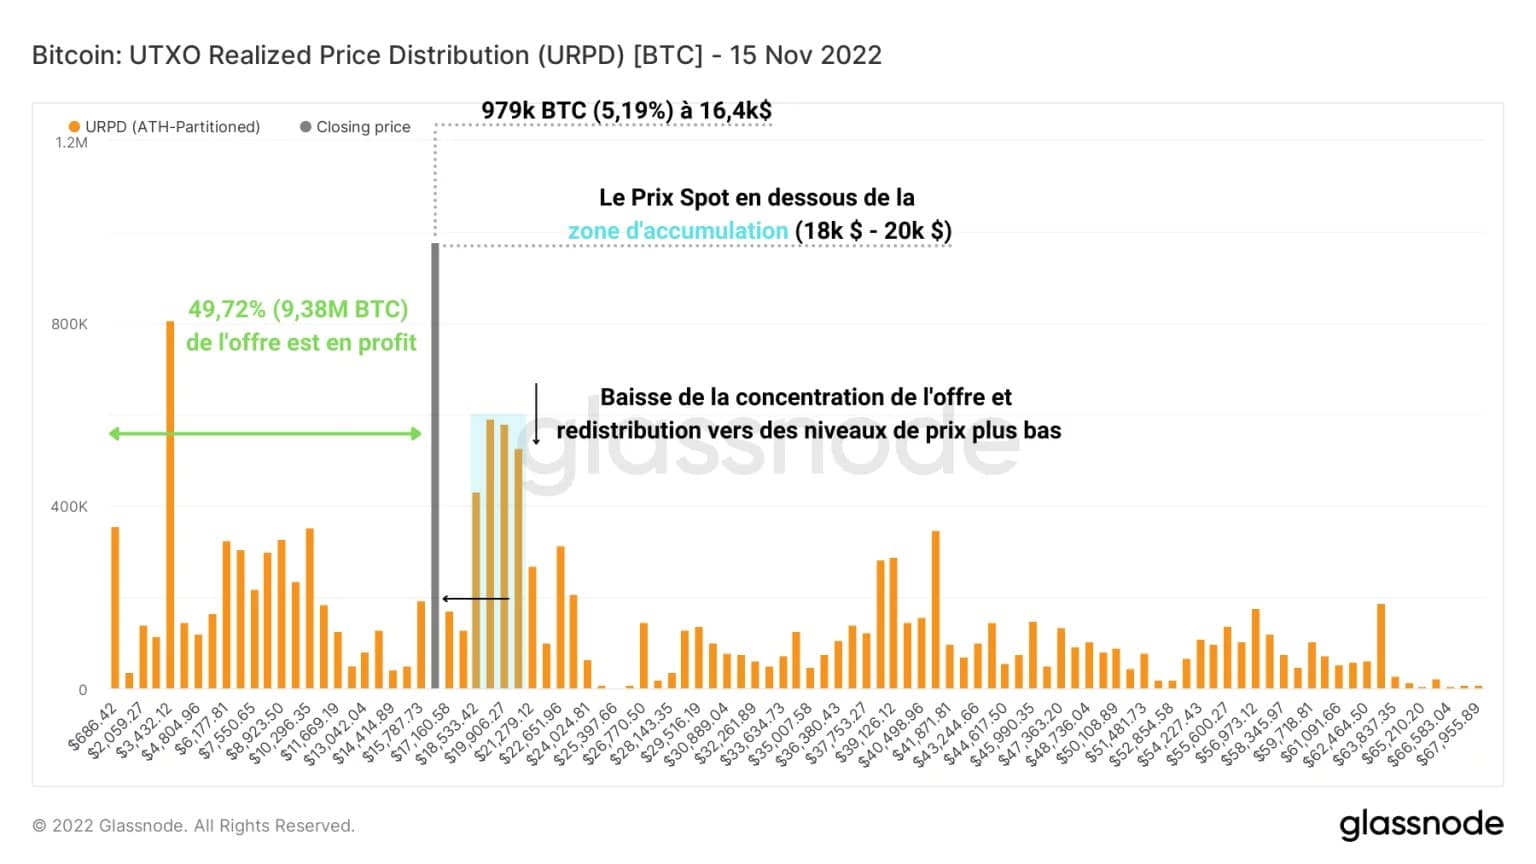 Abbildung 3: Verteilung der realisierten Preise von UTXOs (15. November 2022)